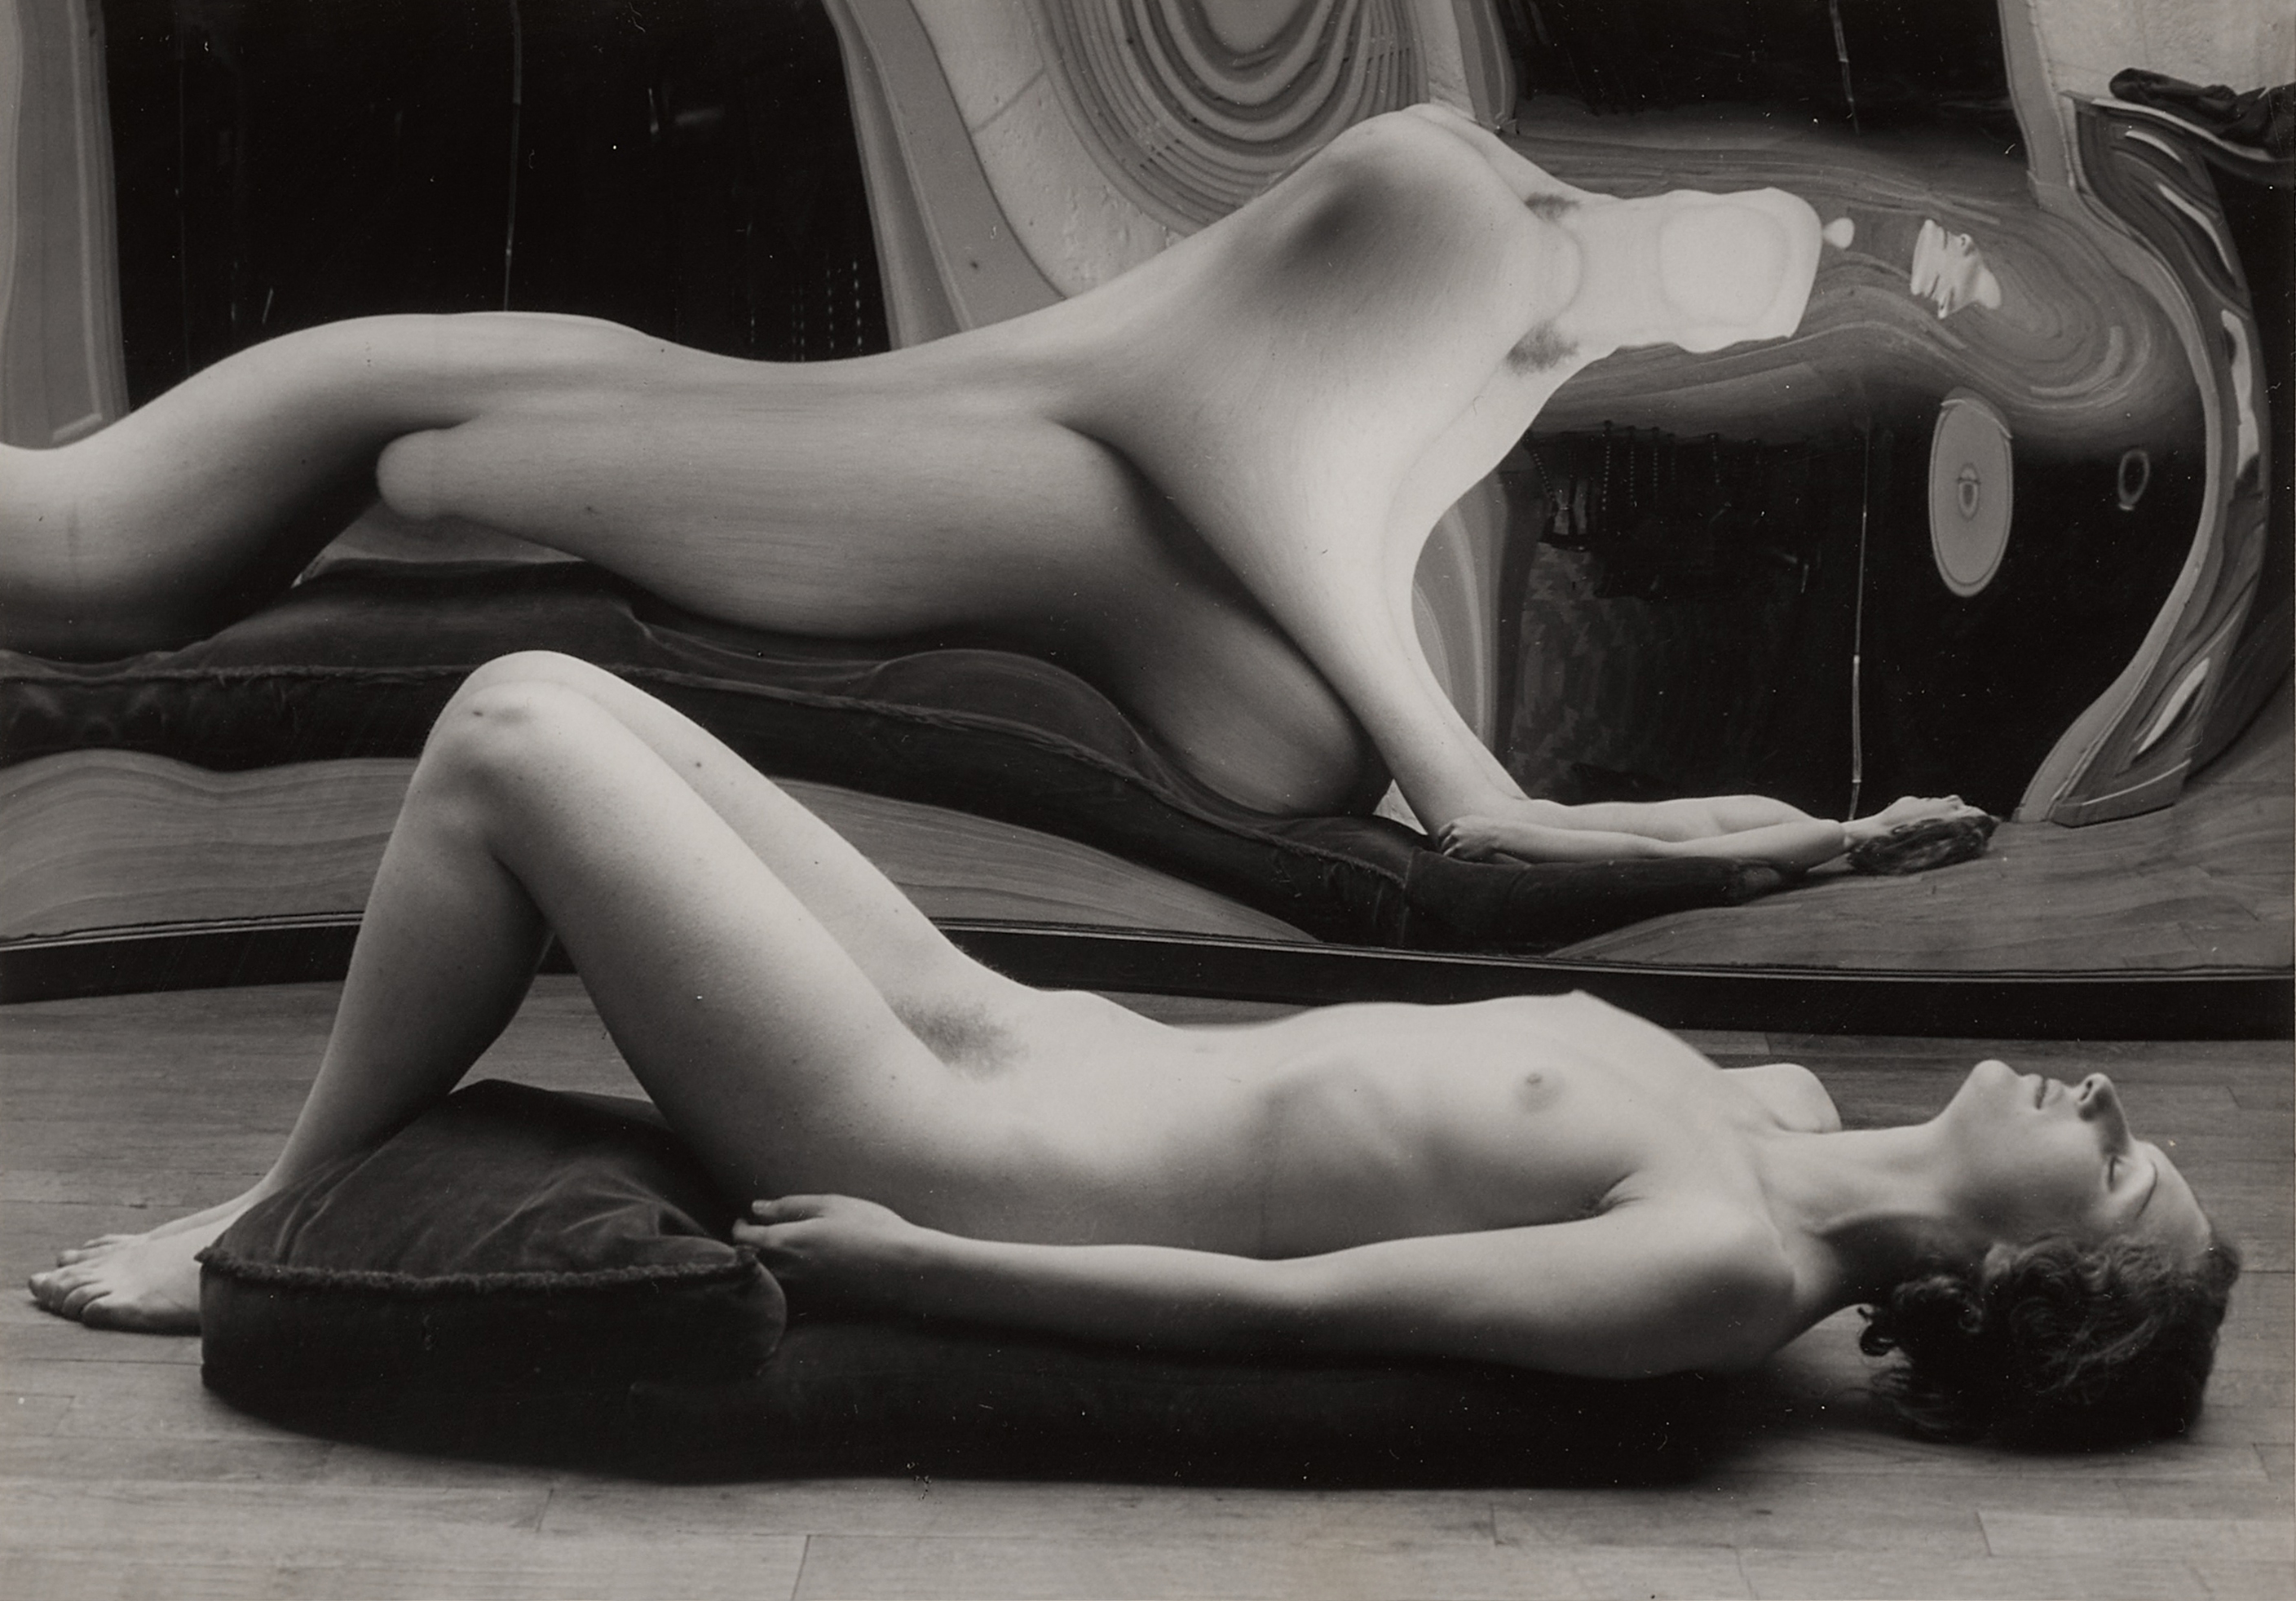 Distortion #45 by André Kertész, dated 1933